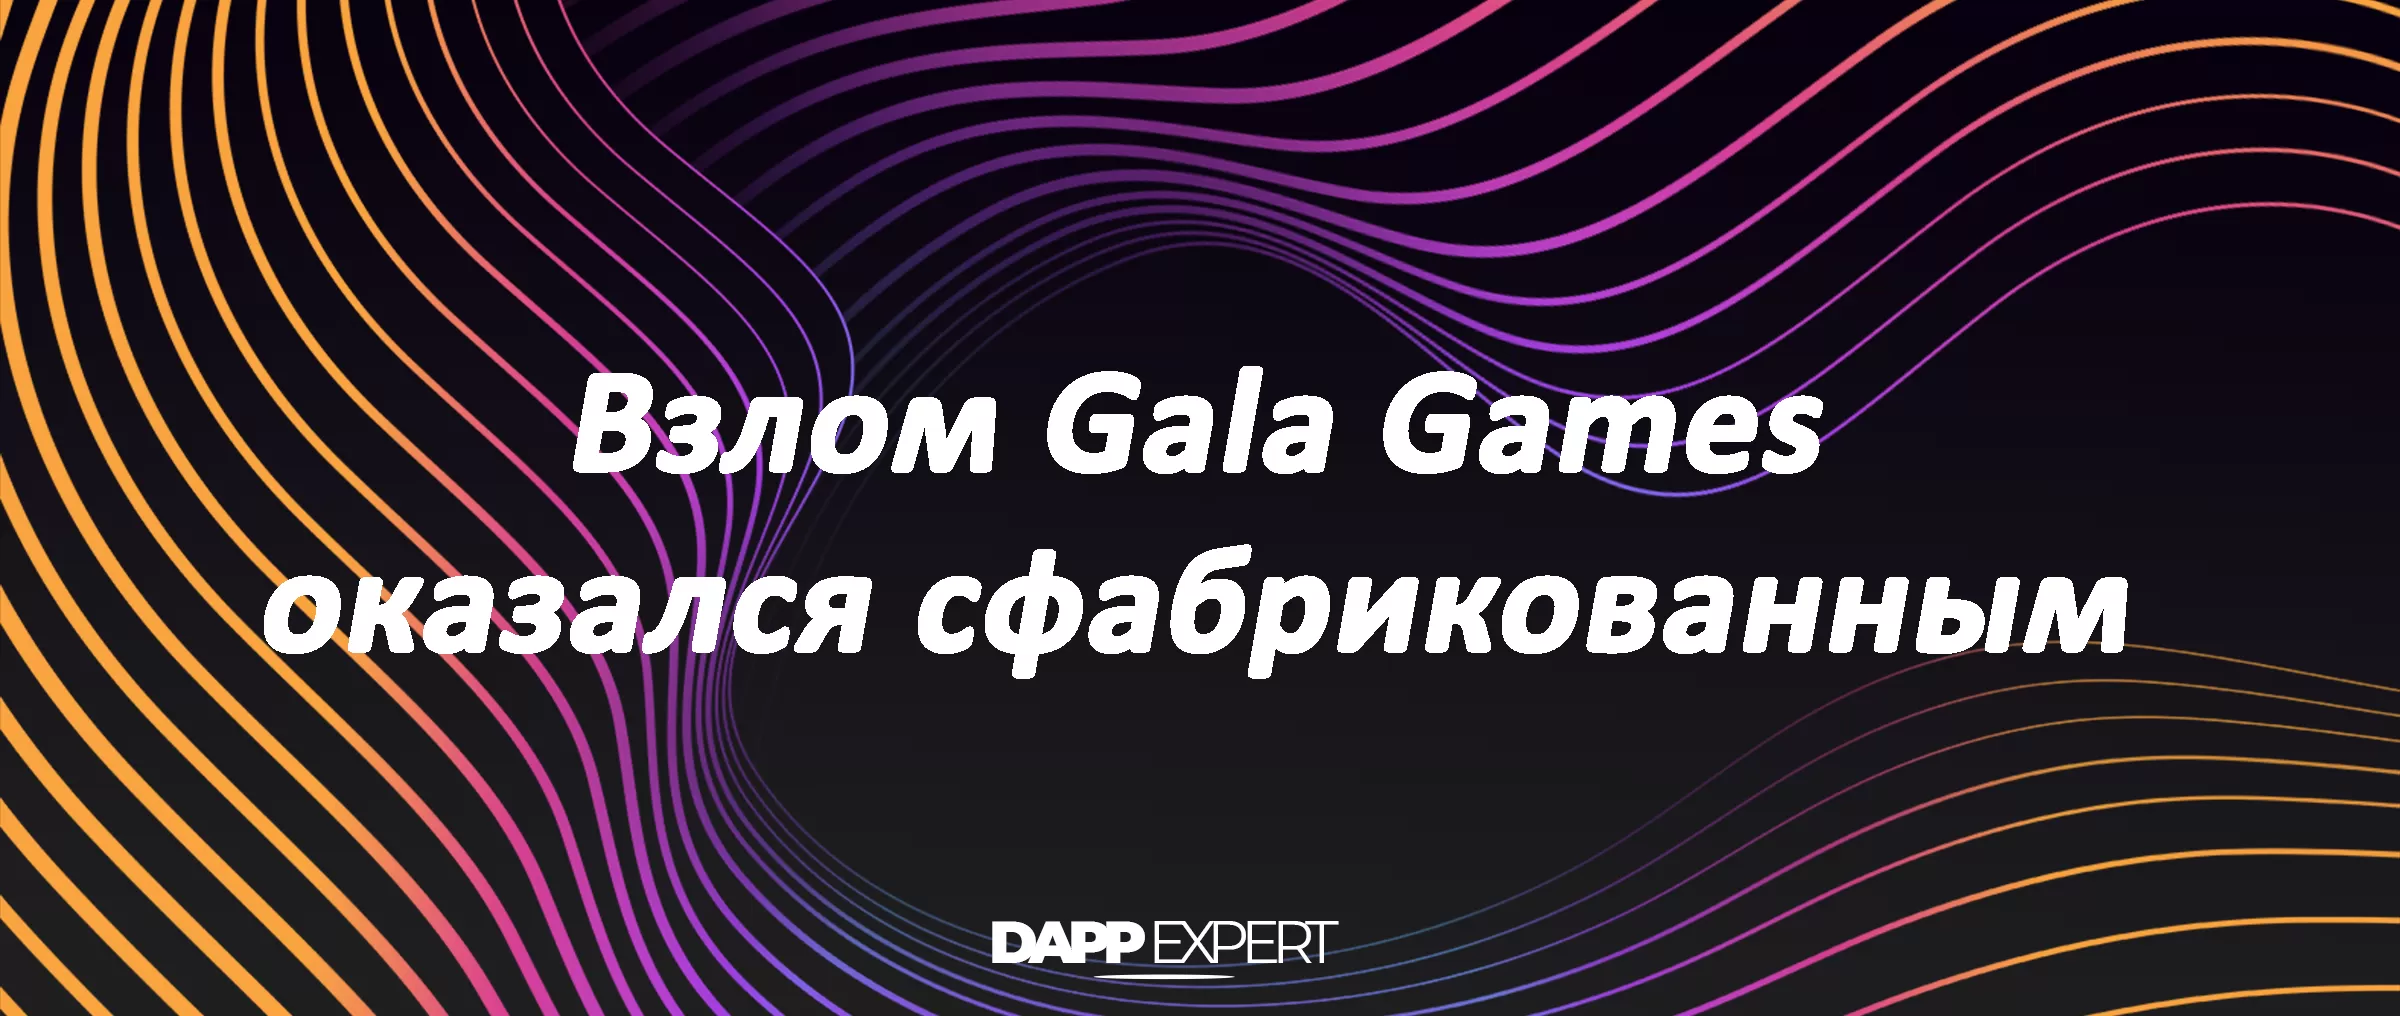 Взлом Gala Games оказался сфабрикованным